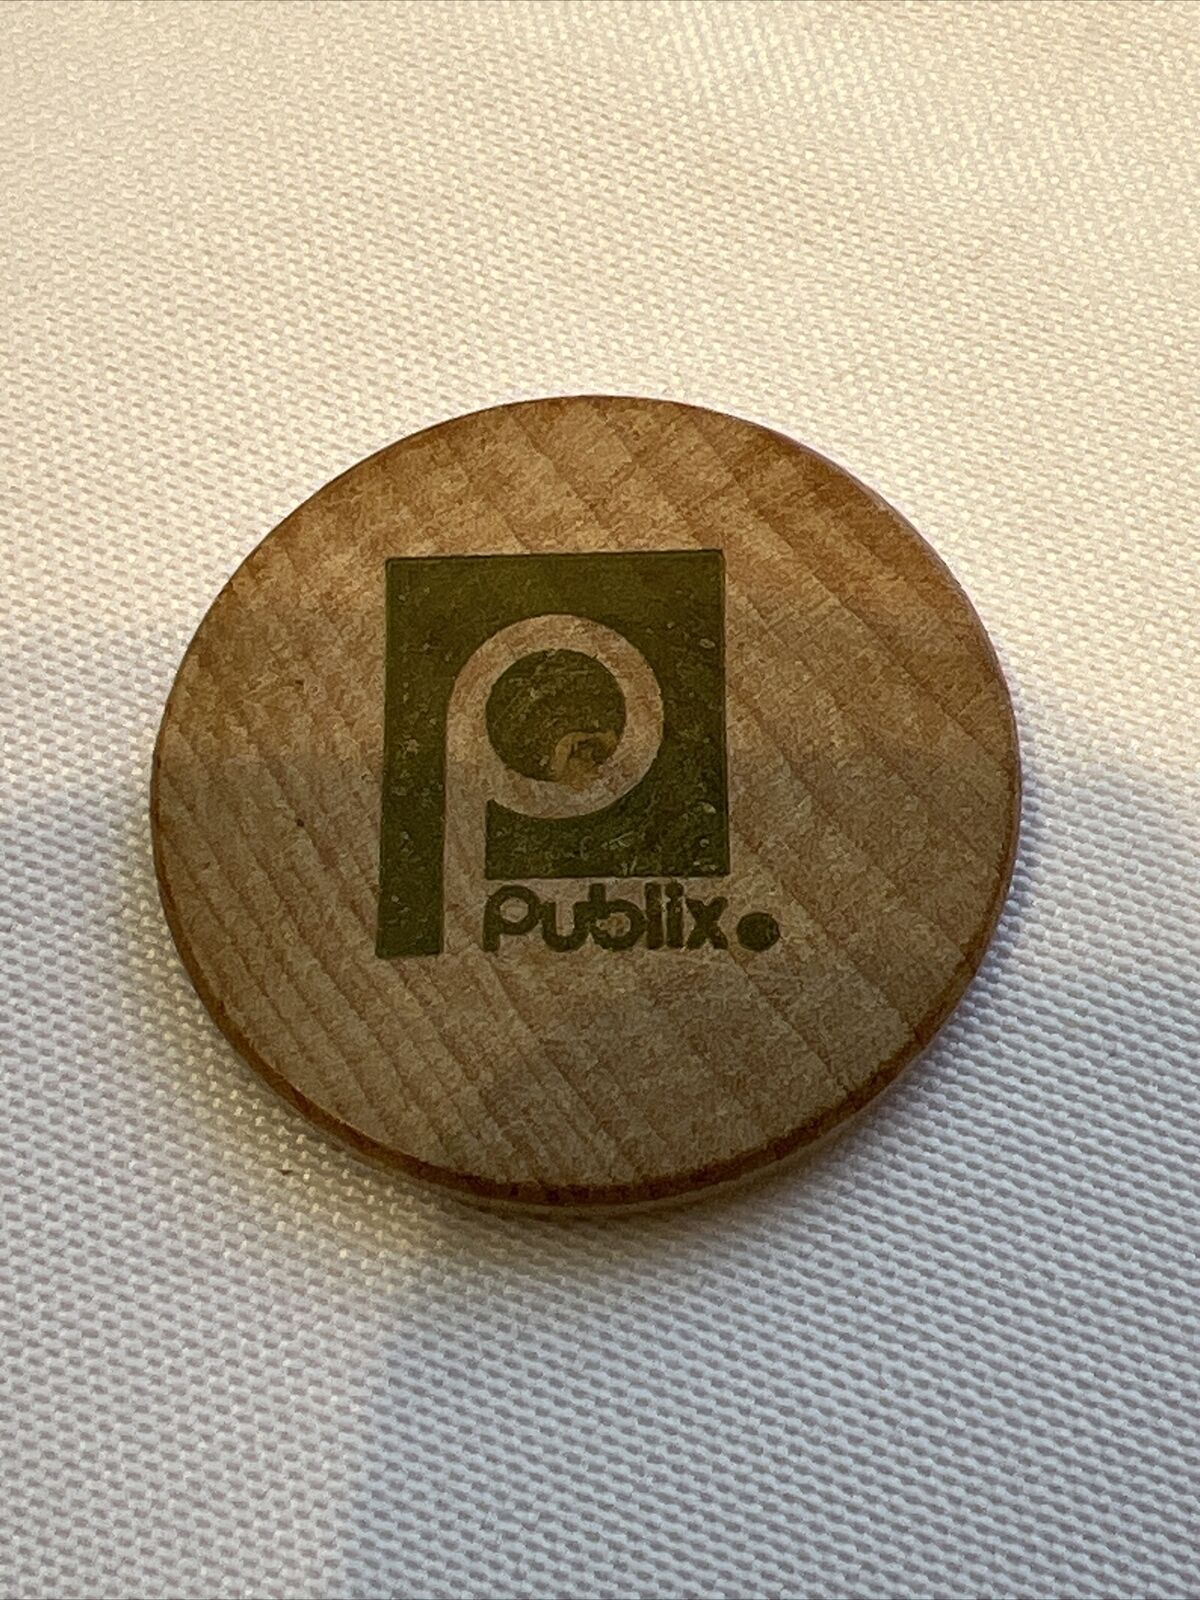 Publix Super Market Publix Pin collectible Publix Coin token Wooden Dollar